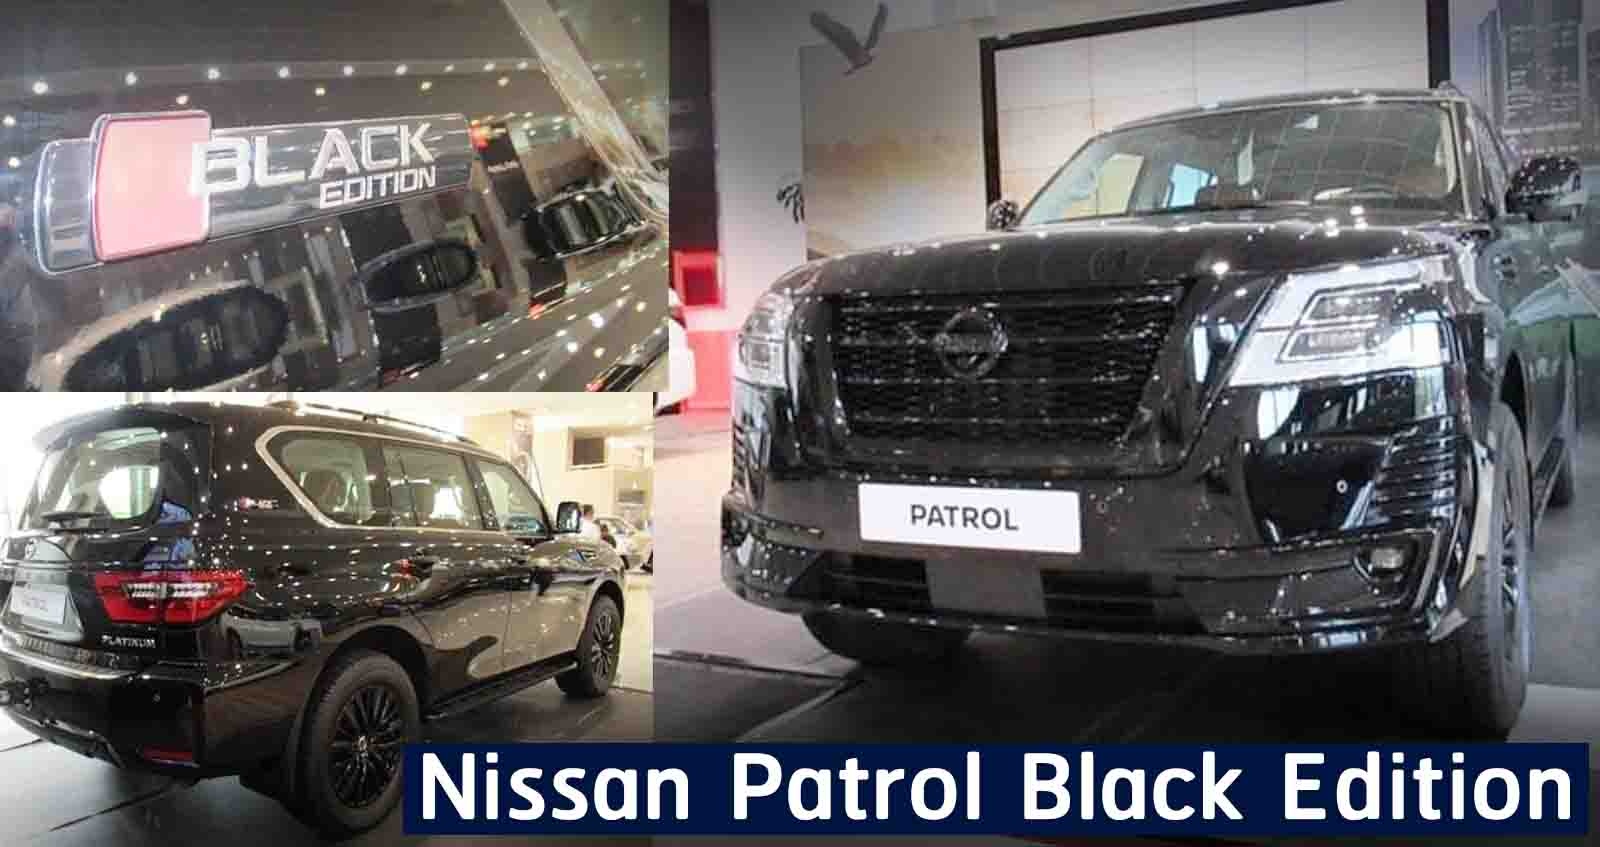 ภาพคันจริง Nissan Patrol Black Edition รุ่นตกแต่งพิเศษ